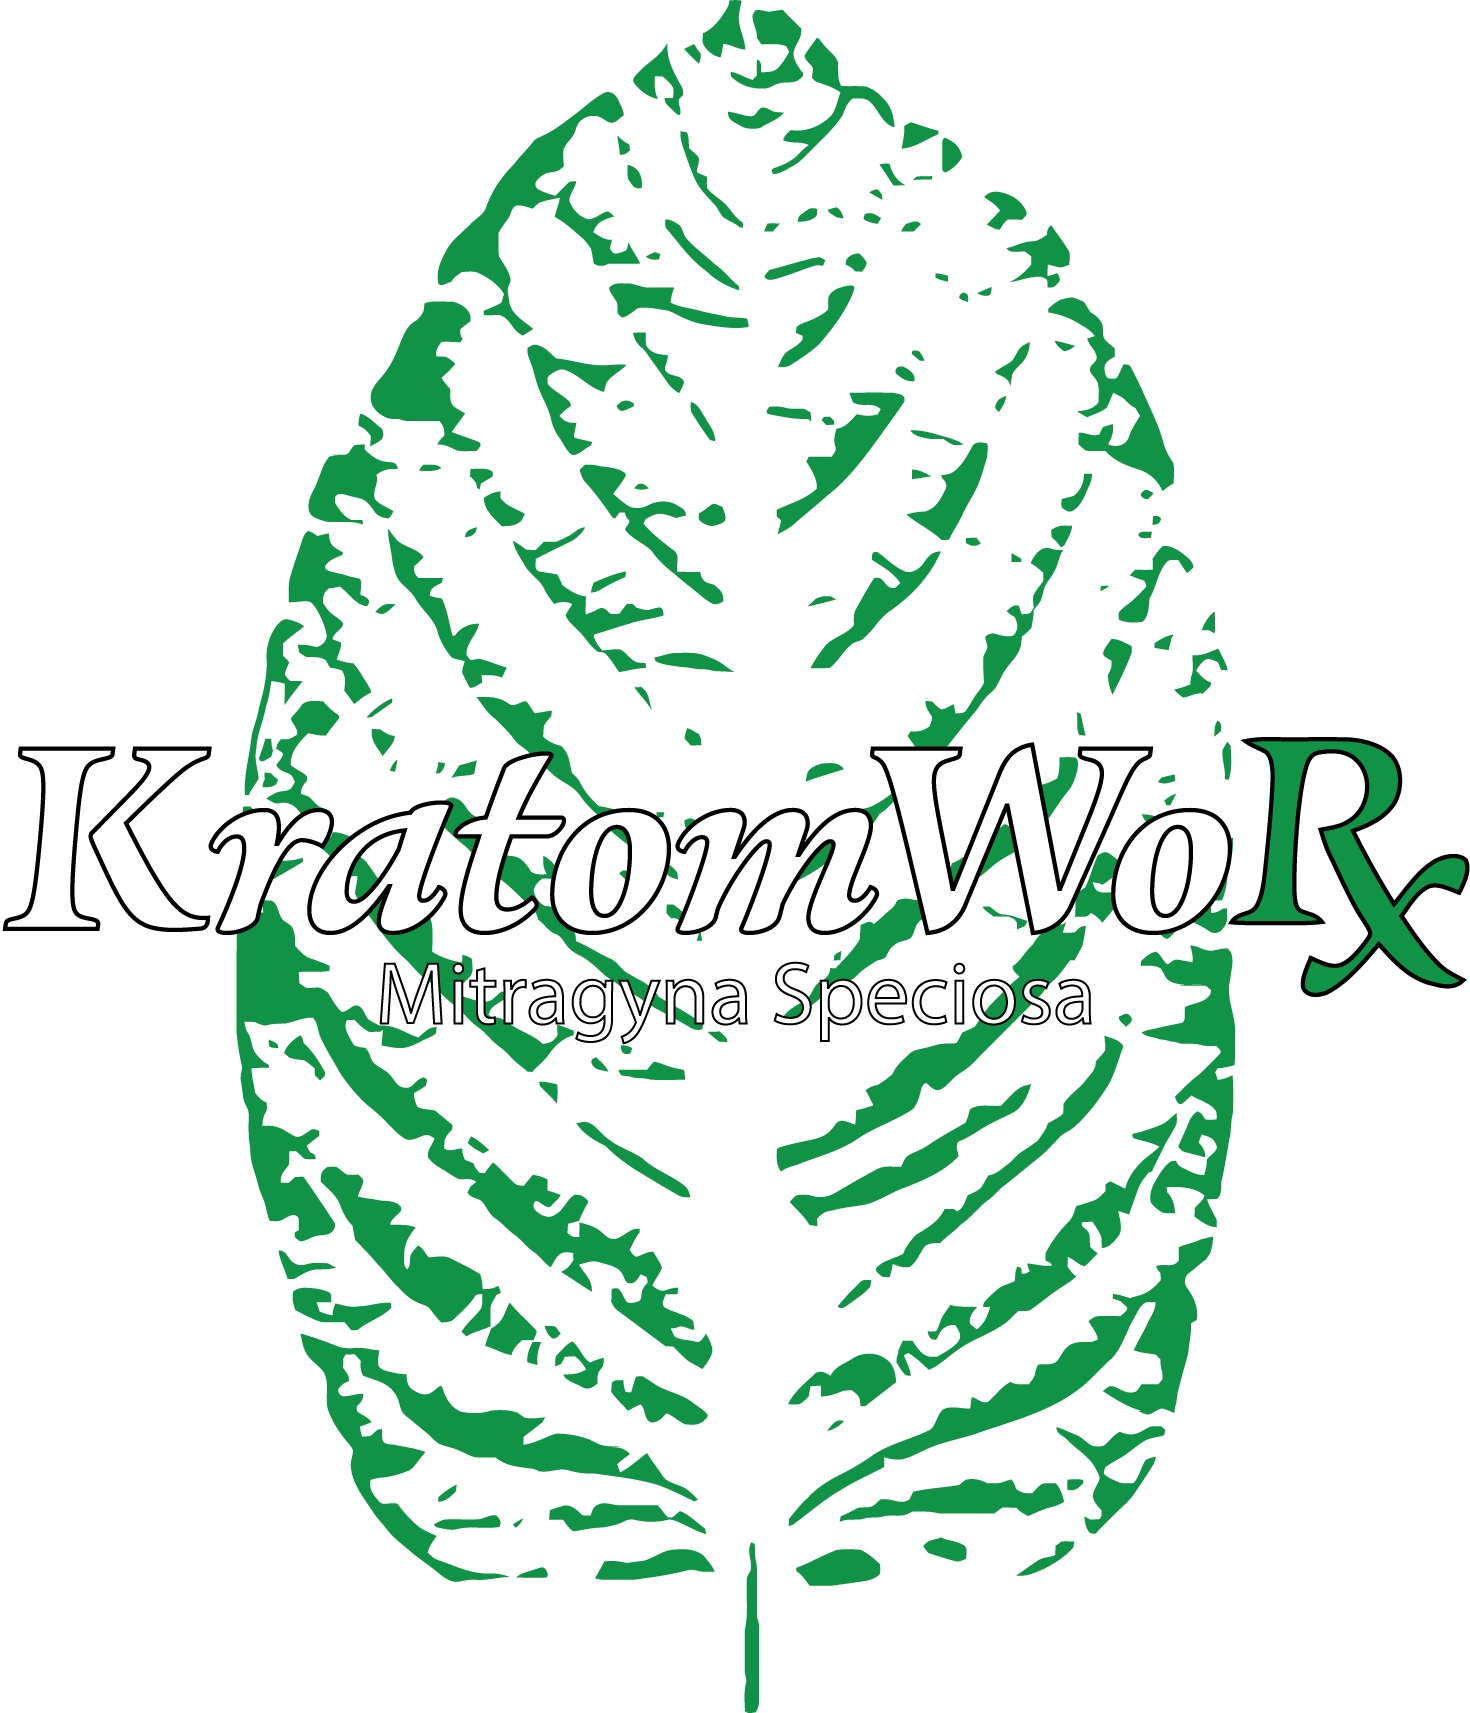 KratomWorx